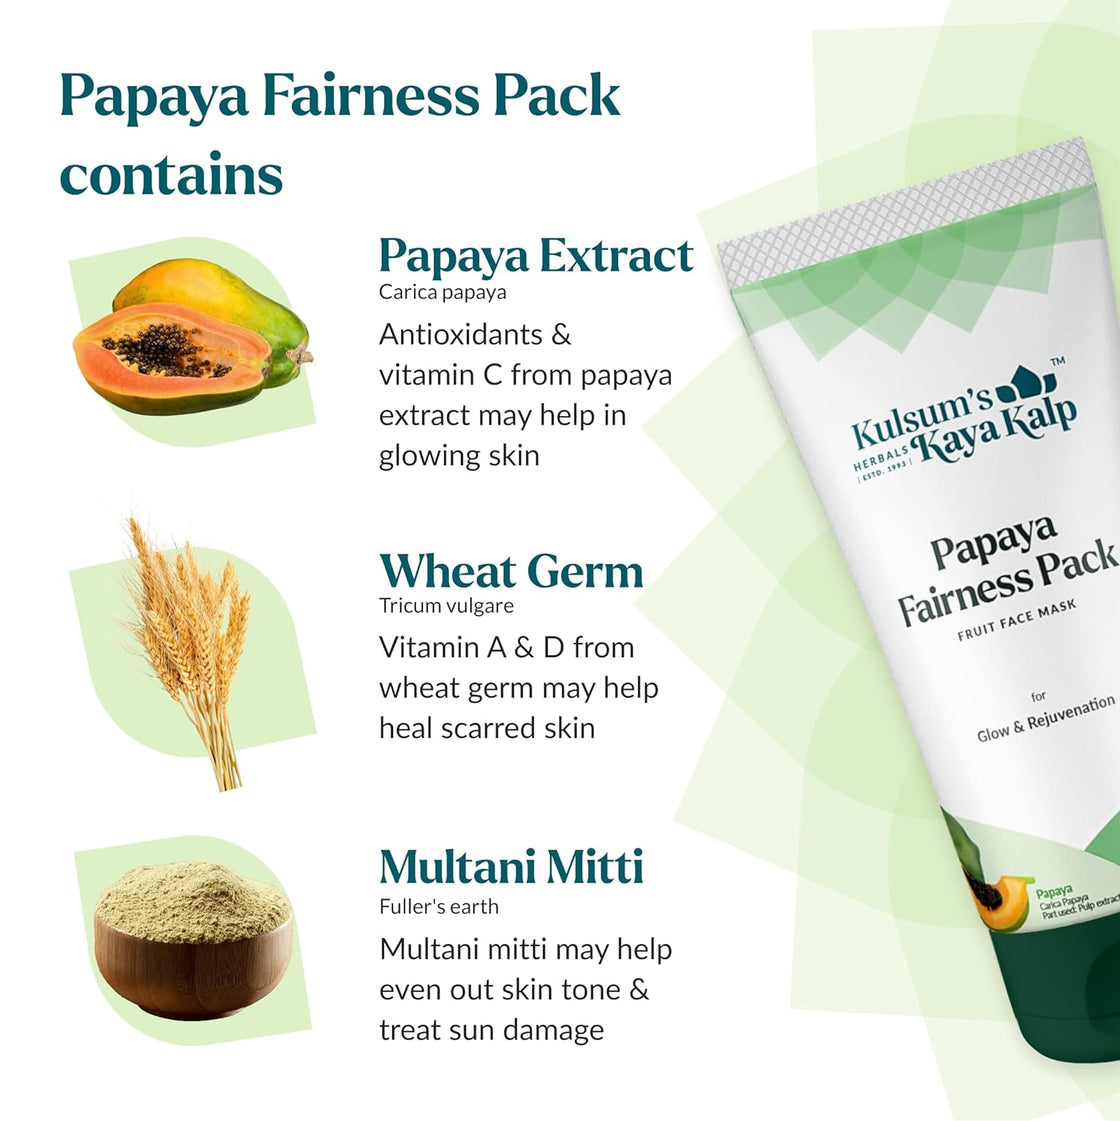 Kulsum's kayakalp Papaya Fairness Pack (100gm)